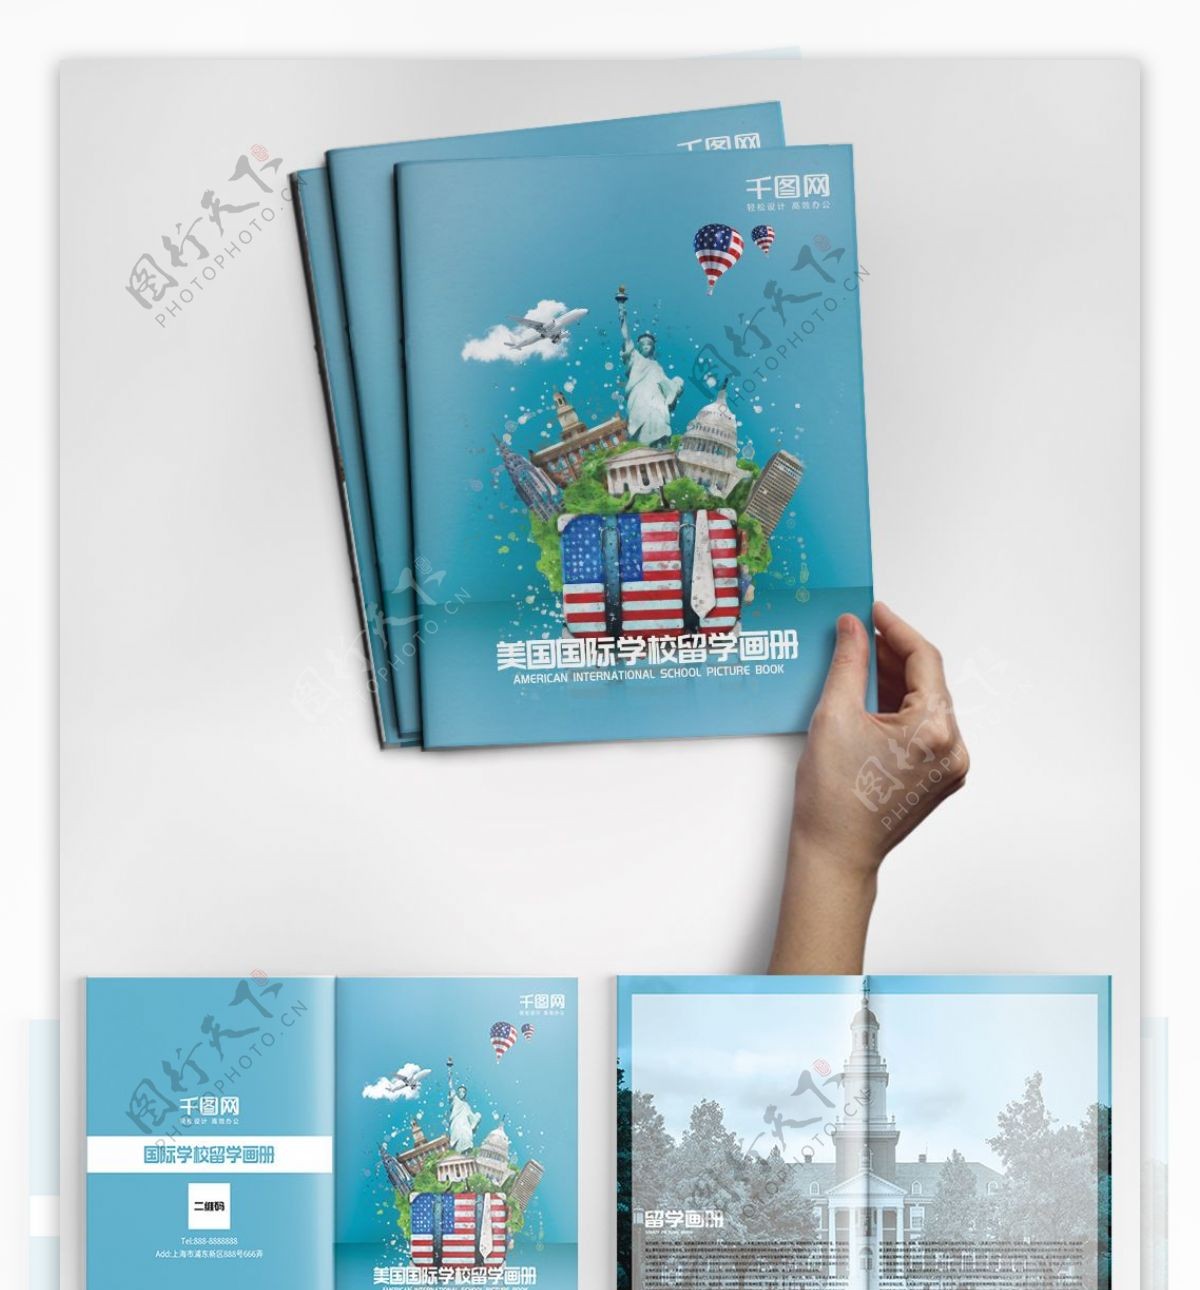 蓝色高端大气水彩封面美国国际学校留学画册